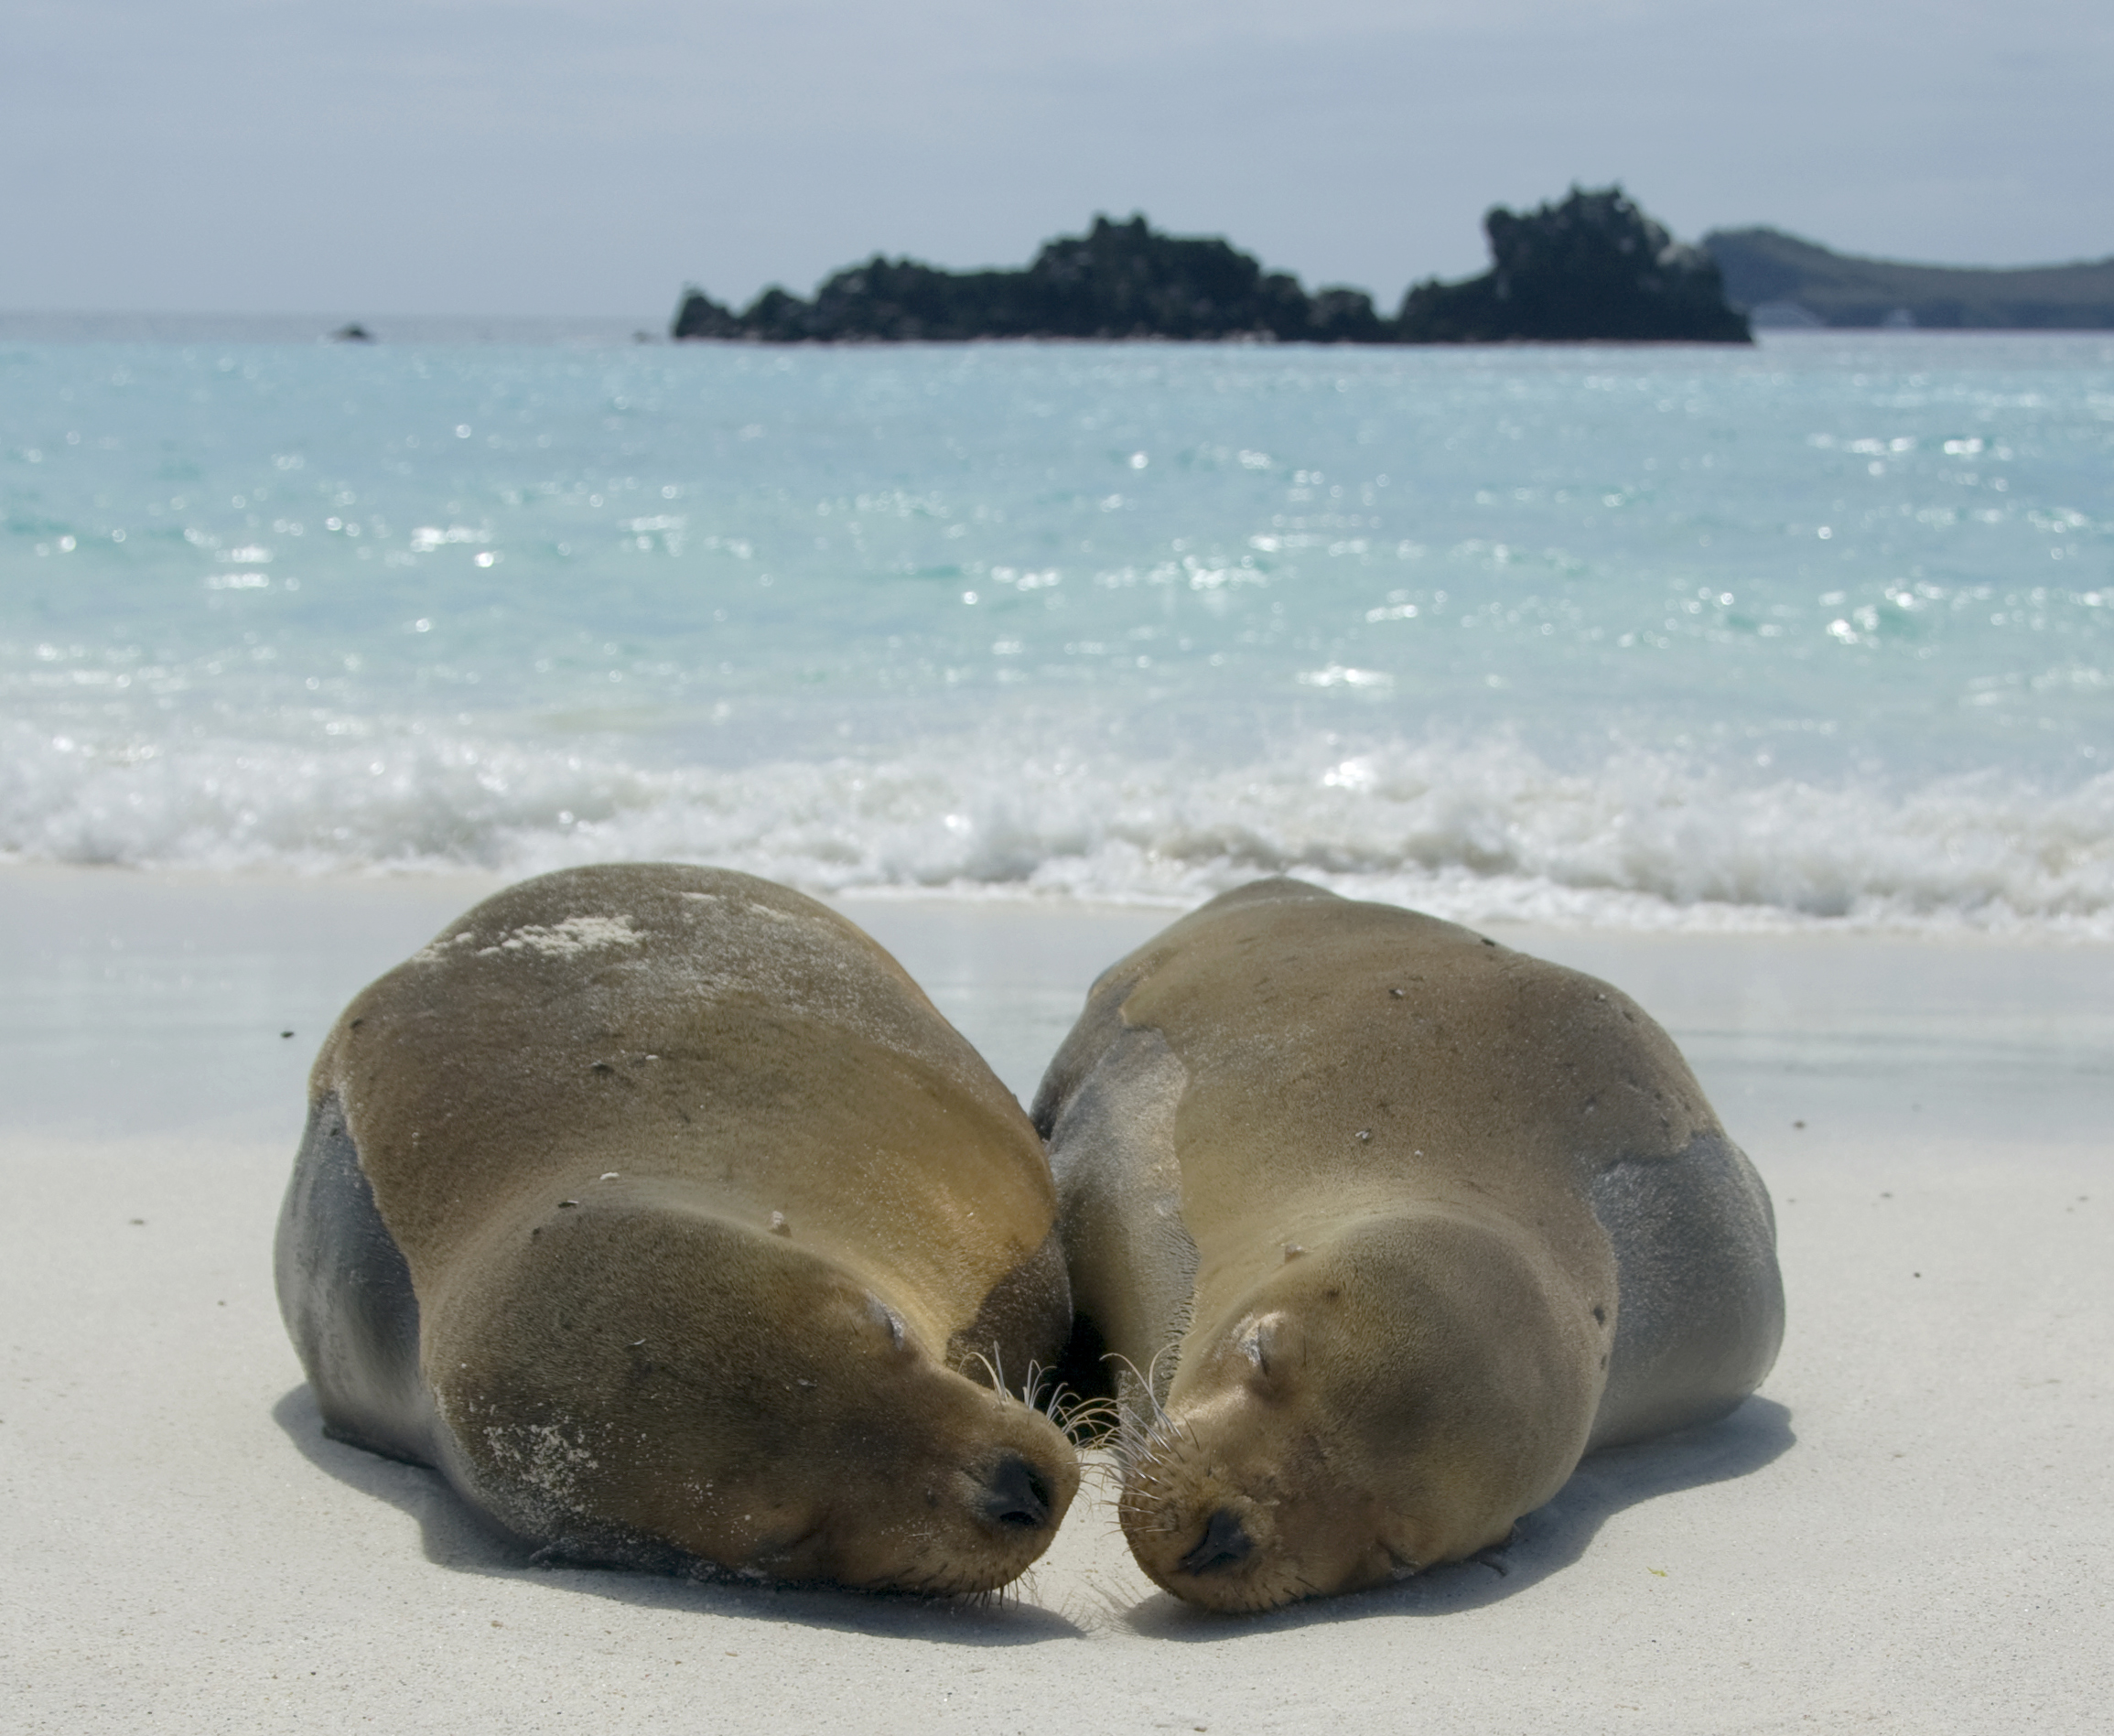 Seals in Galapagos Islands, Ecuador, World Heritage Site